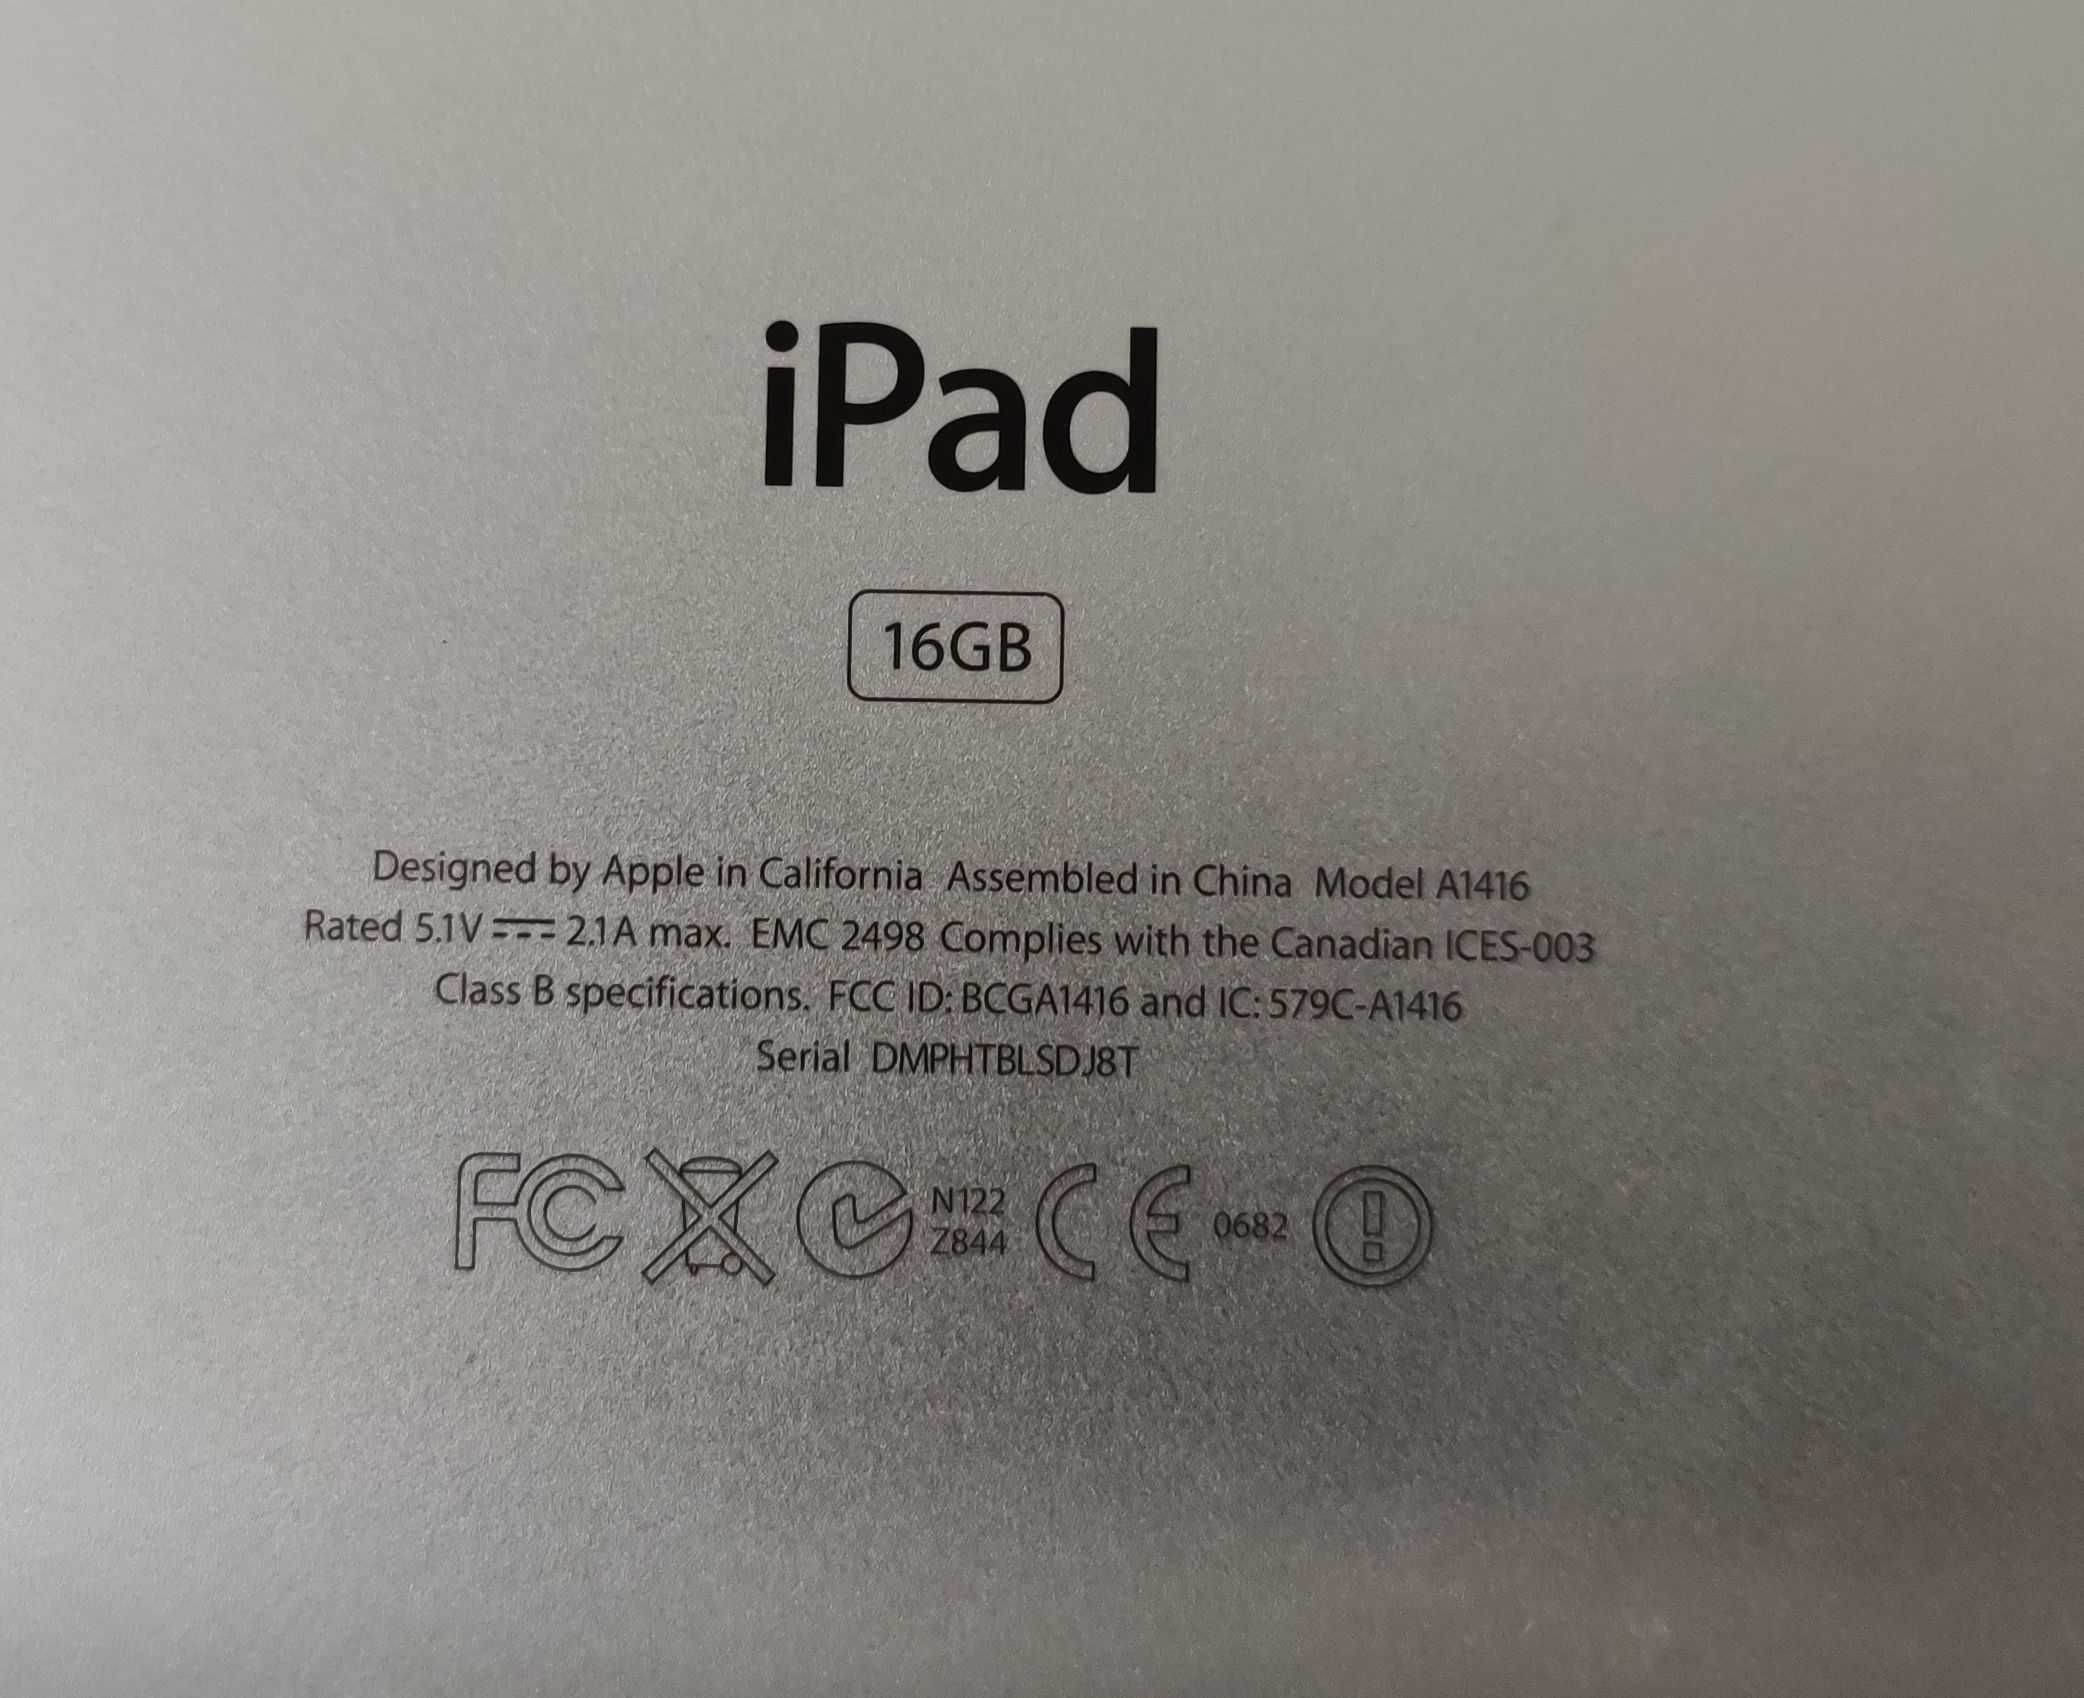 iPad 16GB model A1416 blocat